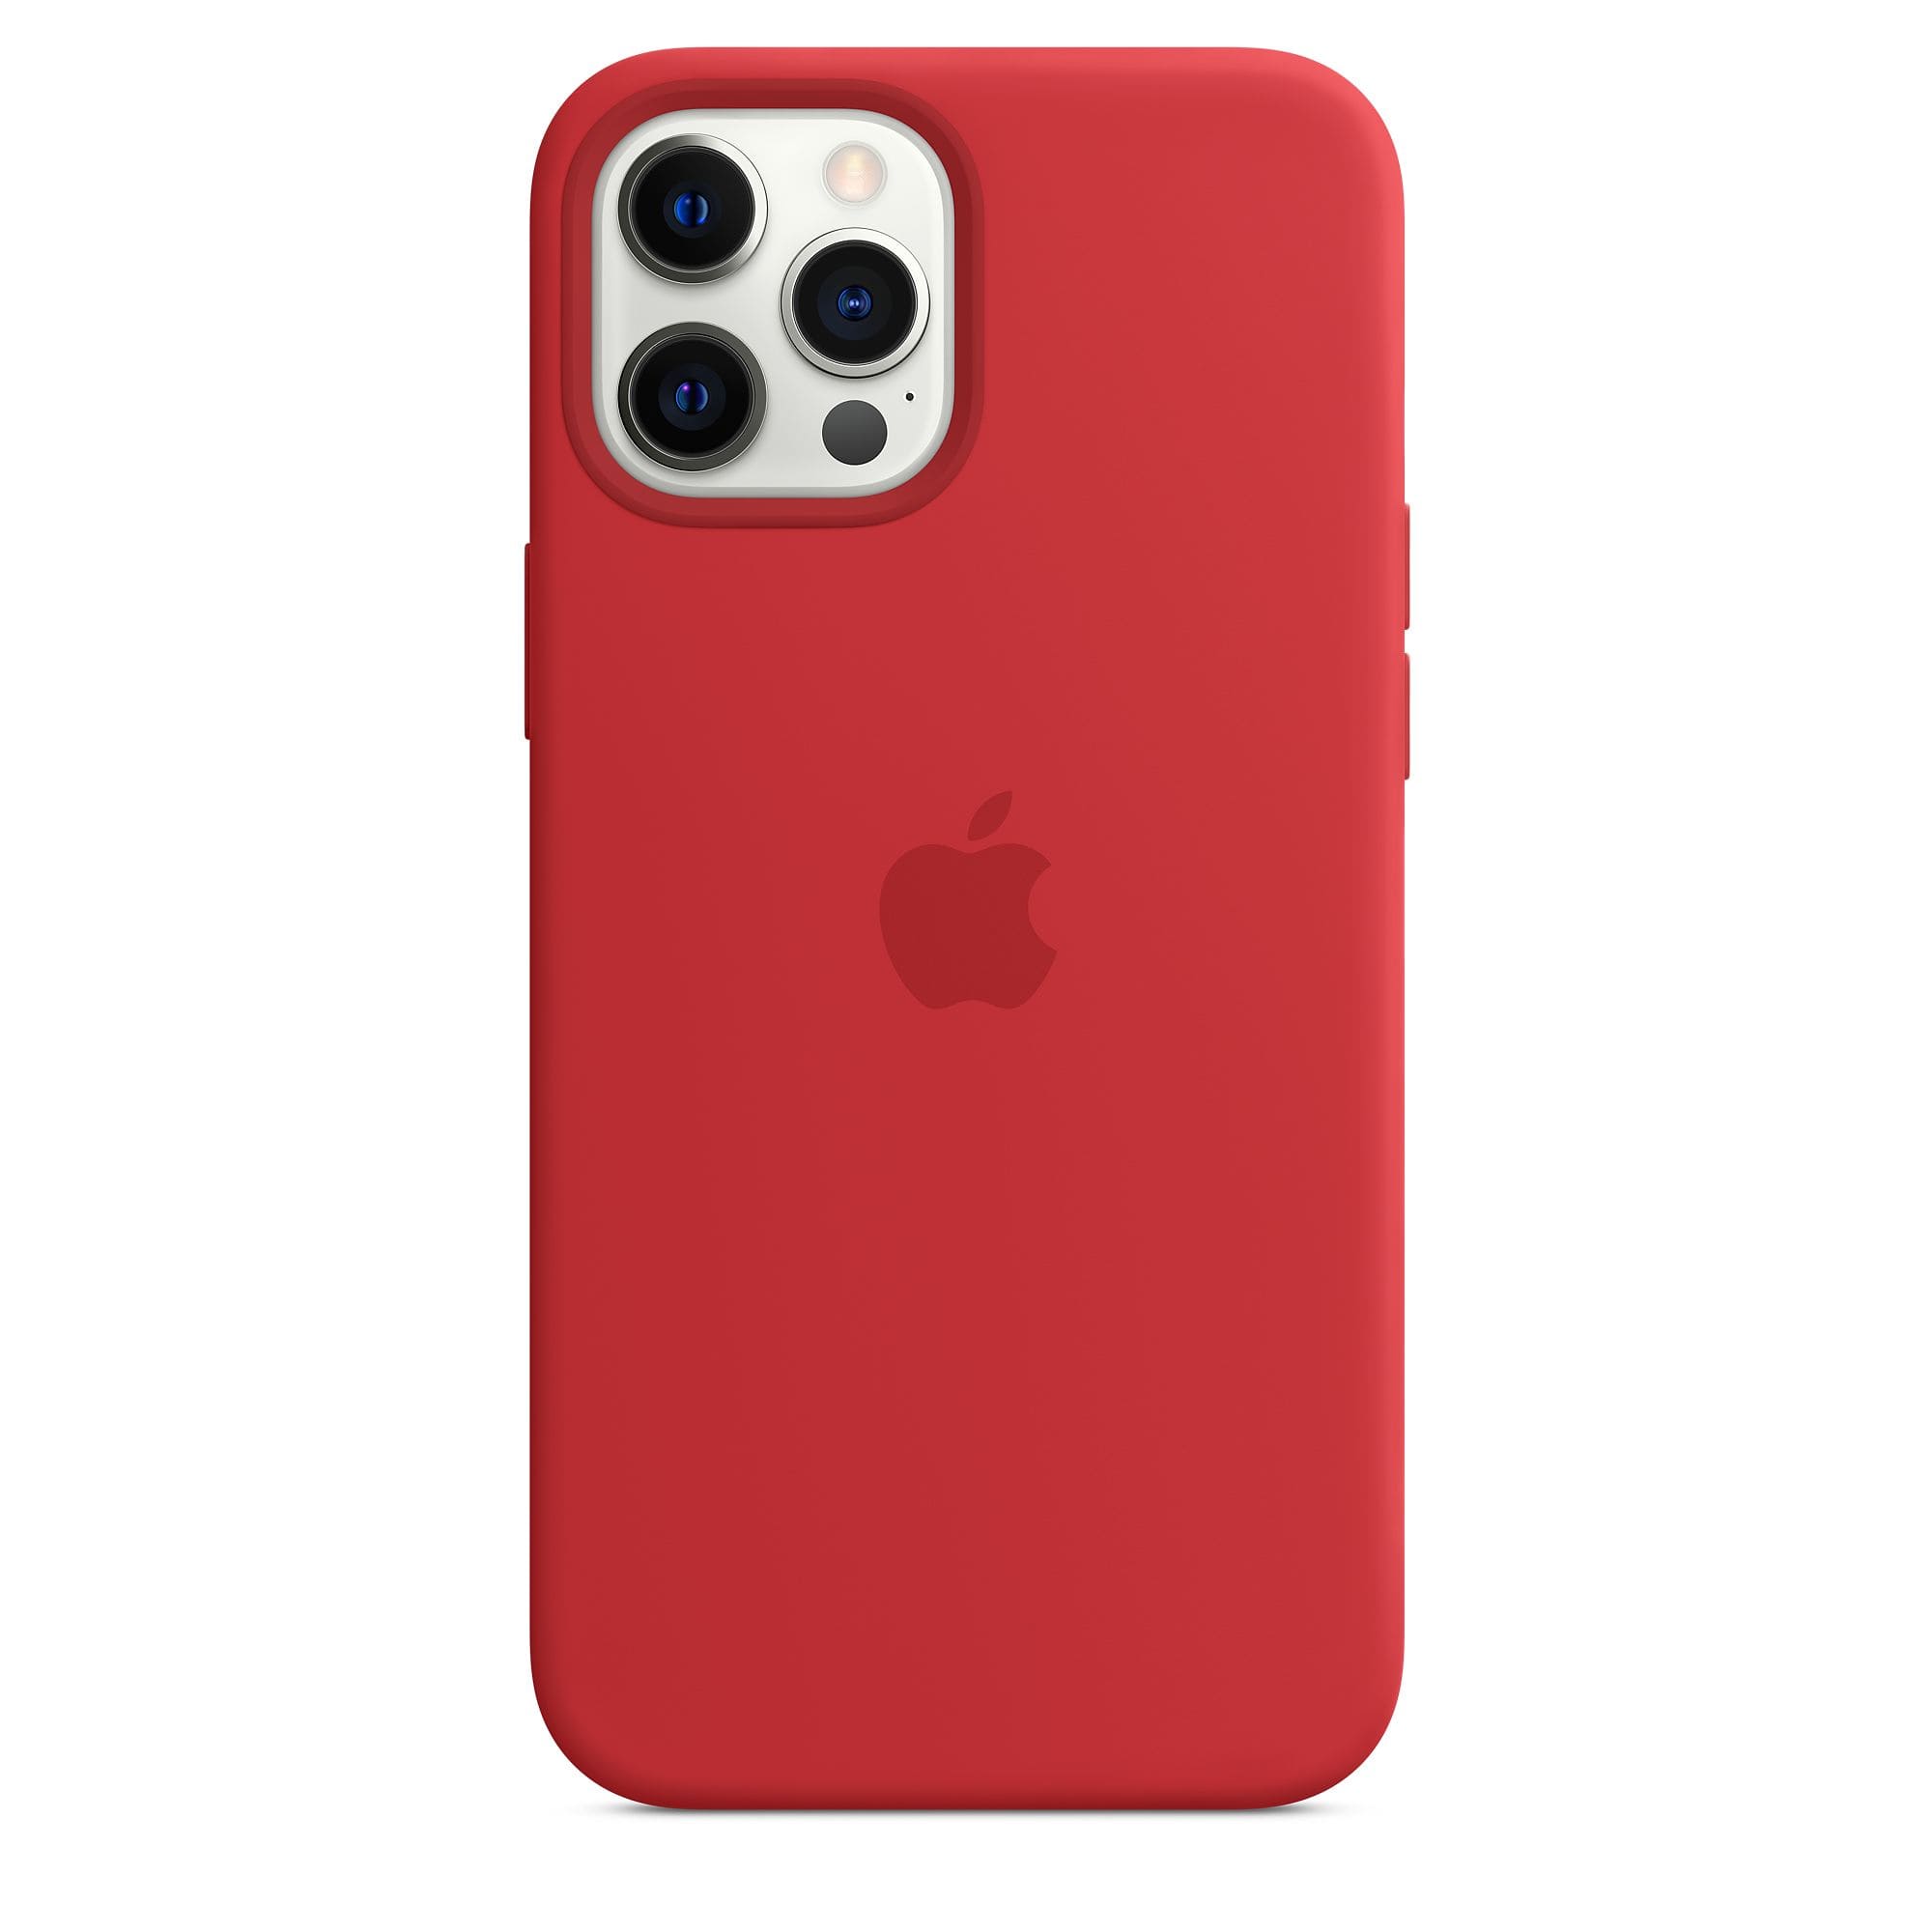 Фото — Чехол Apple MagSafe для iPhone 12 Pro Max, силикон, красный (PRODUCT)RED